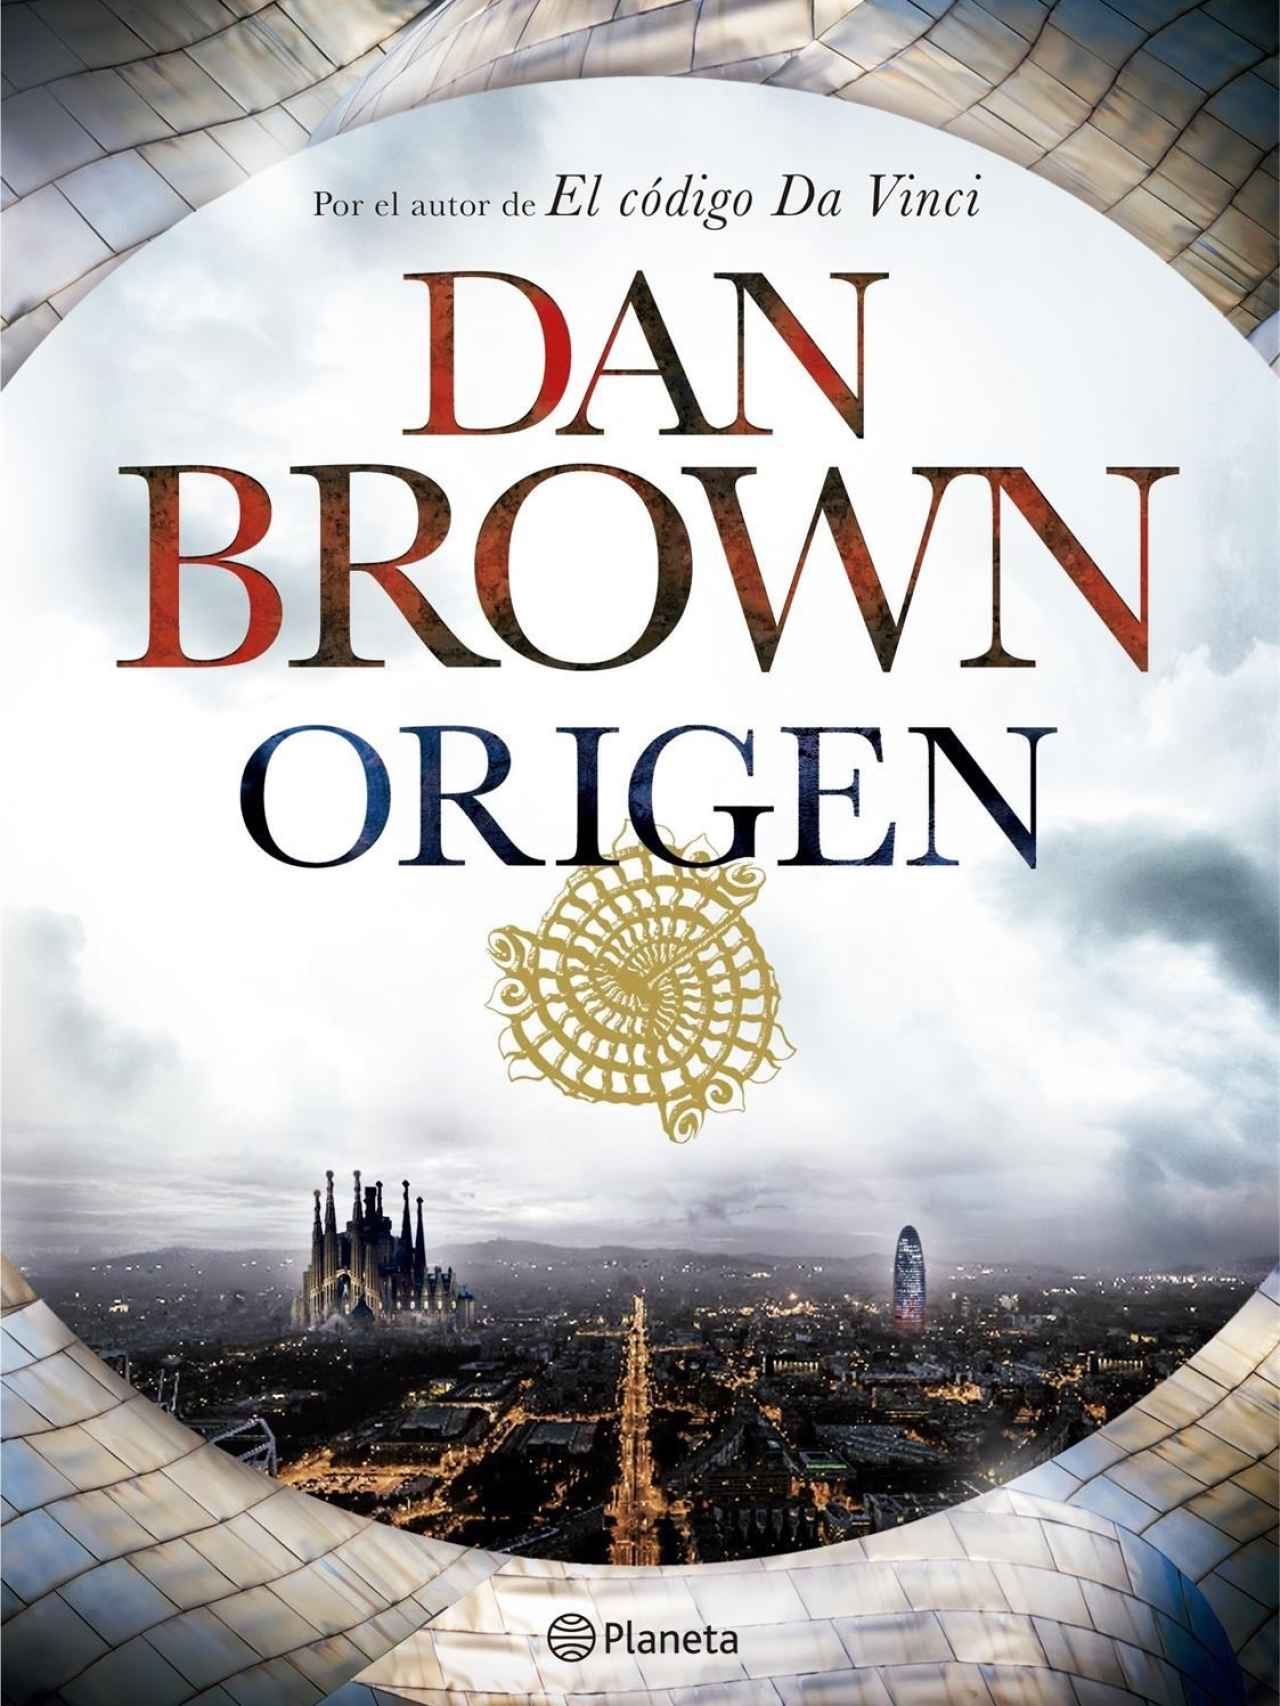 Portada del libro Origen, de Dan Brown.